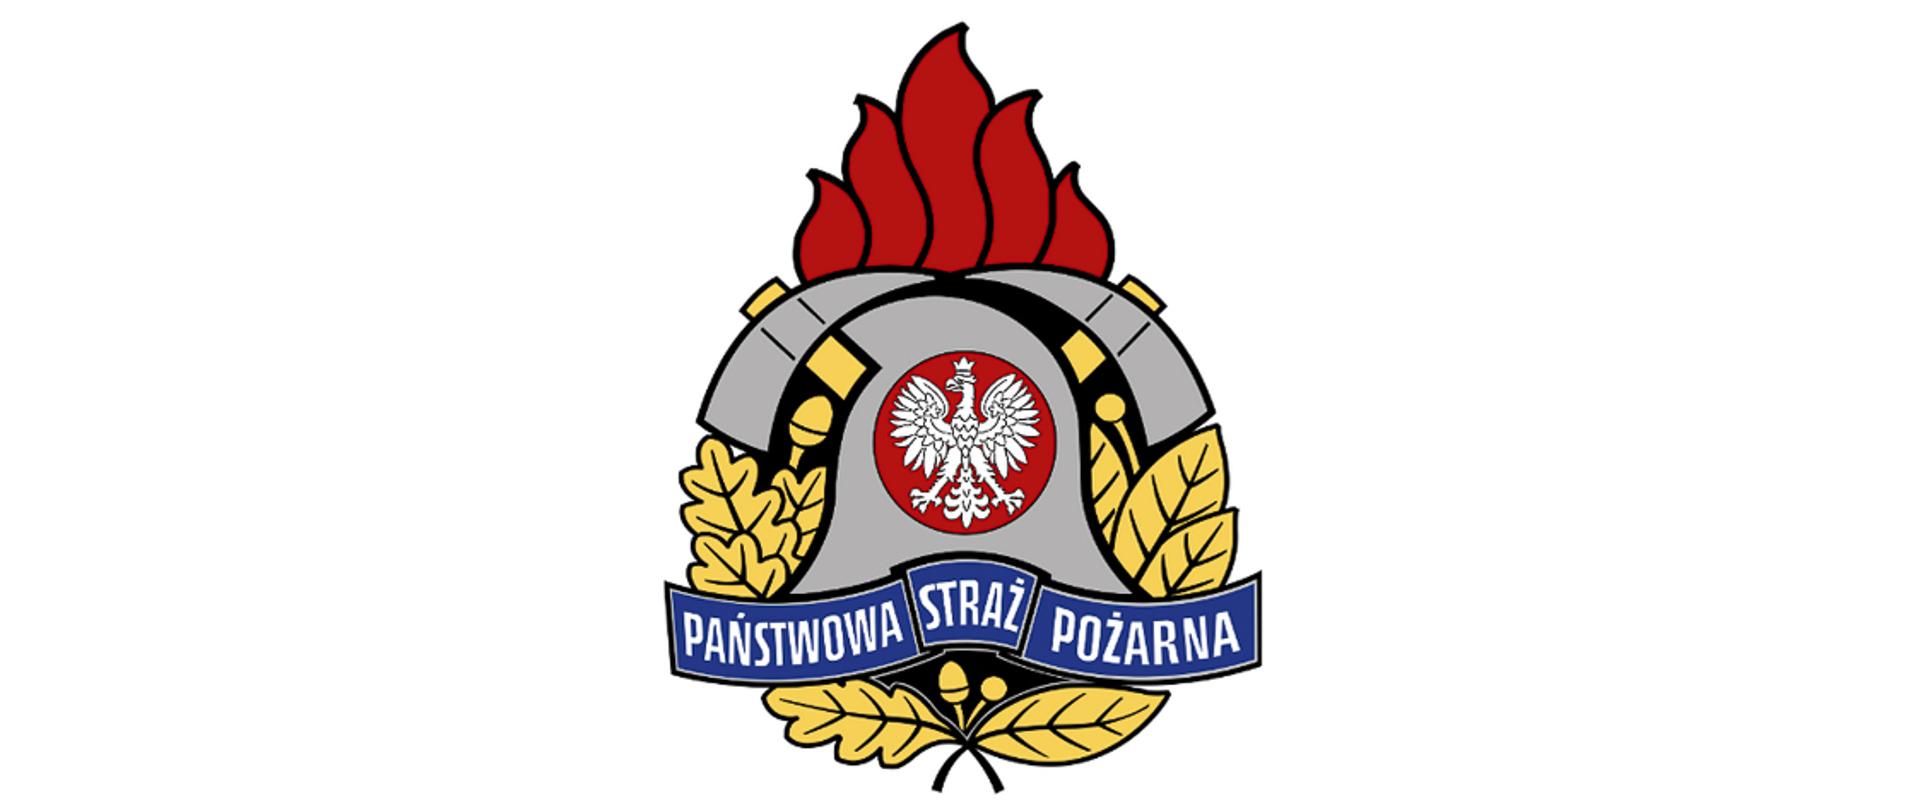 Mazowiecka straż pożarna logo PSP